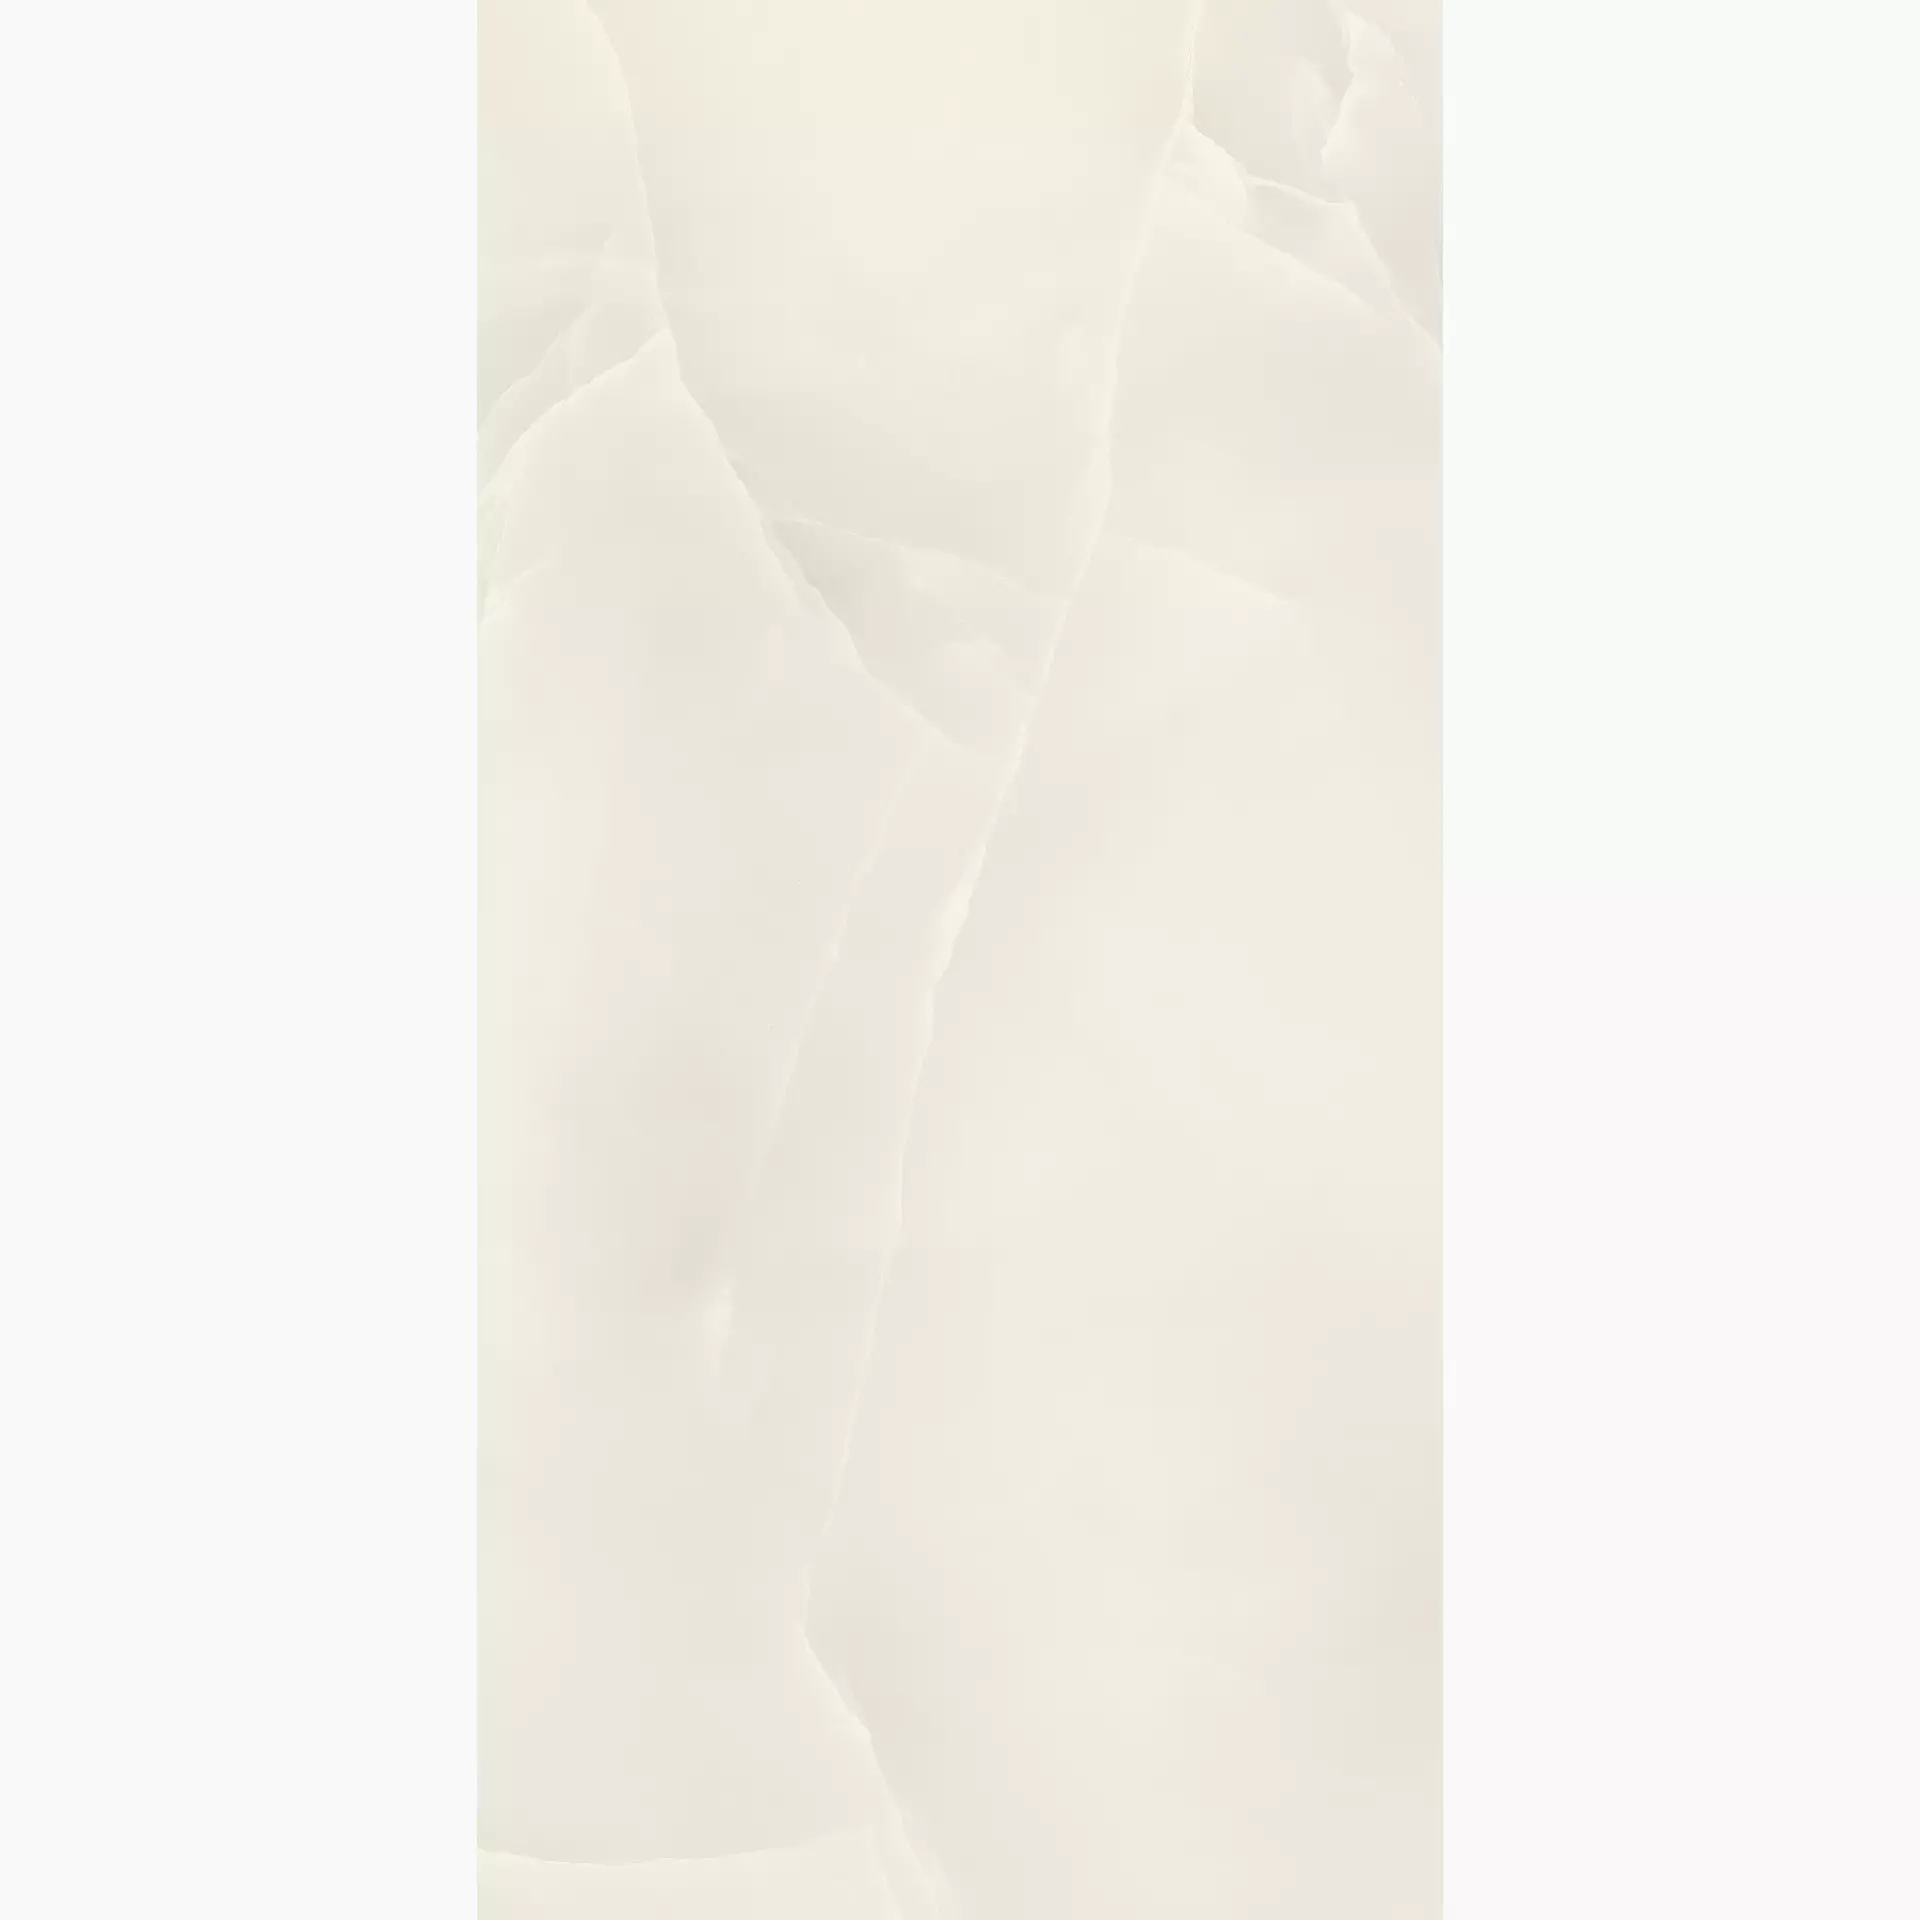 Refin Prestigio Onyx White Soft OP13 75x150cm rectified 9mm